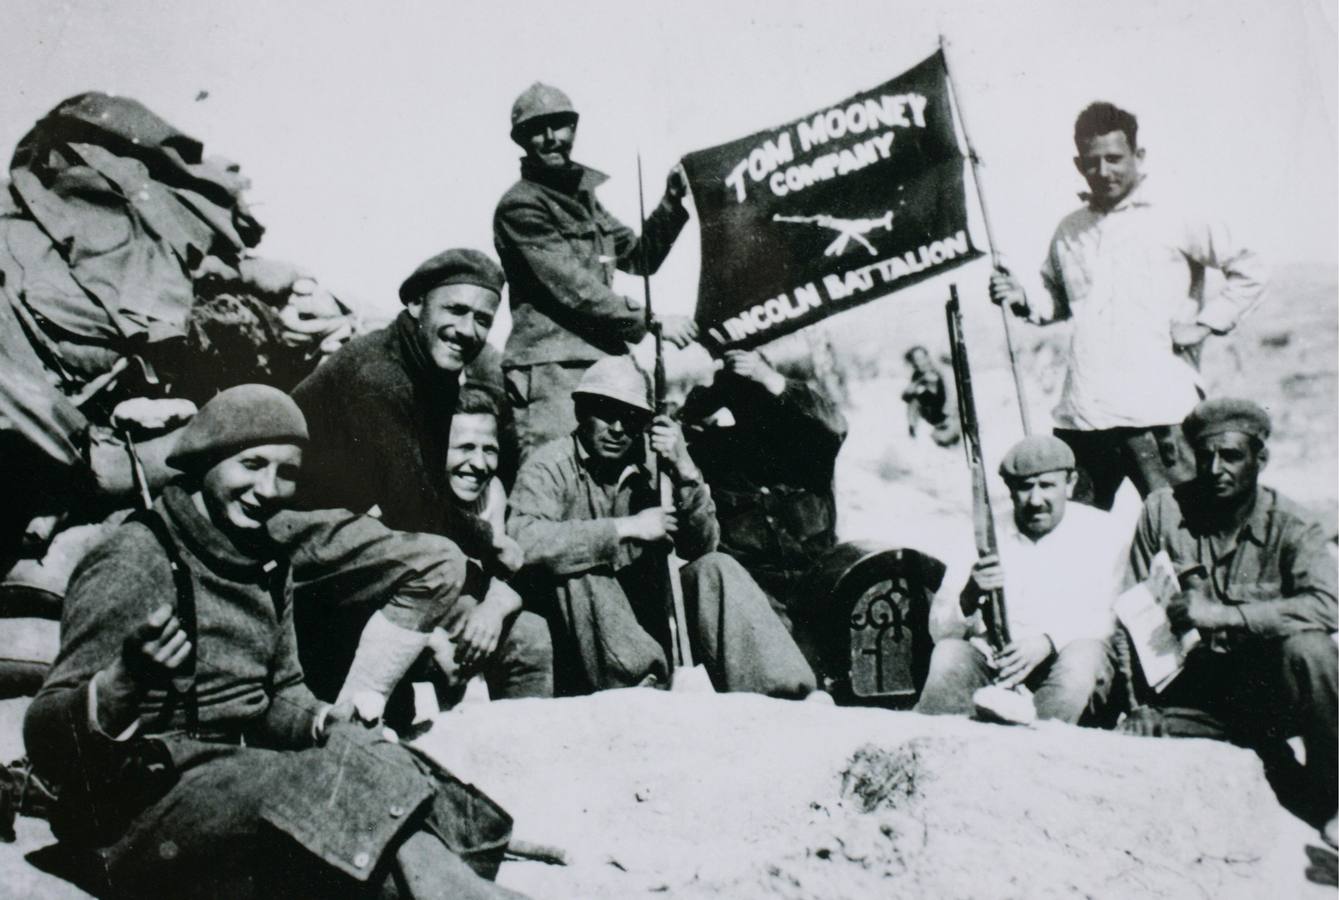 A al derecha Dave Smith, que se convirtió en un veterano miembro de la brigada Lincoln en Jarama, en una foto de 1937.